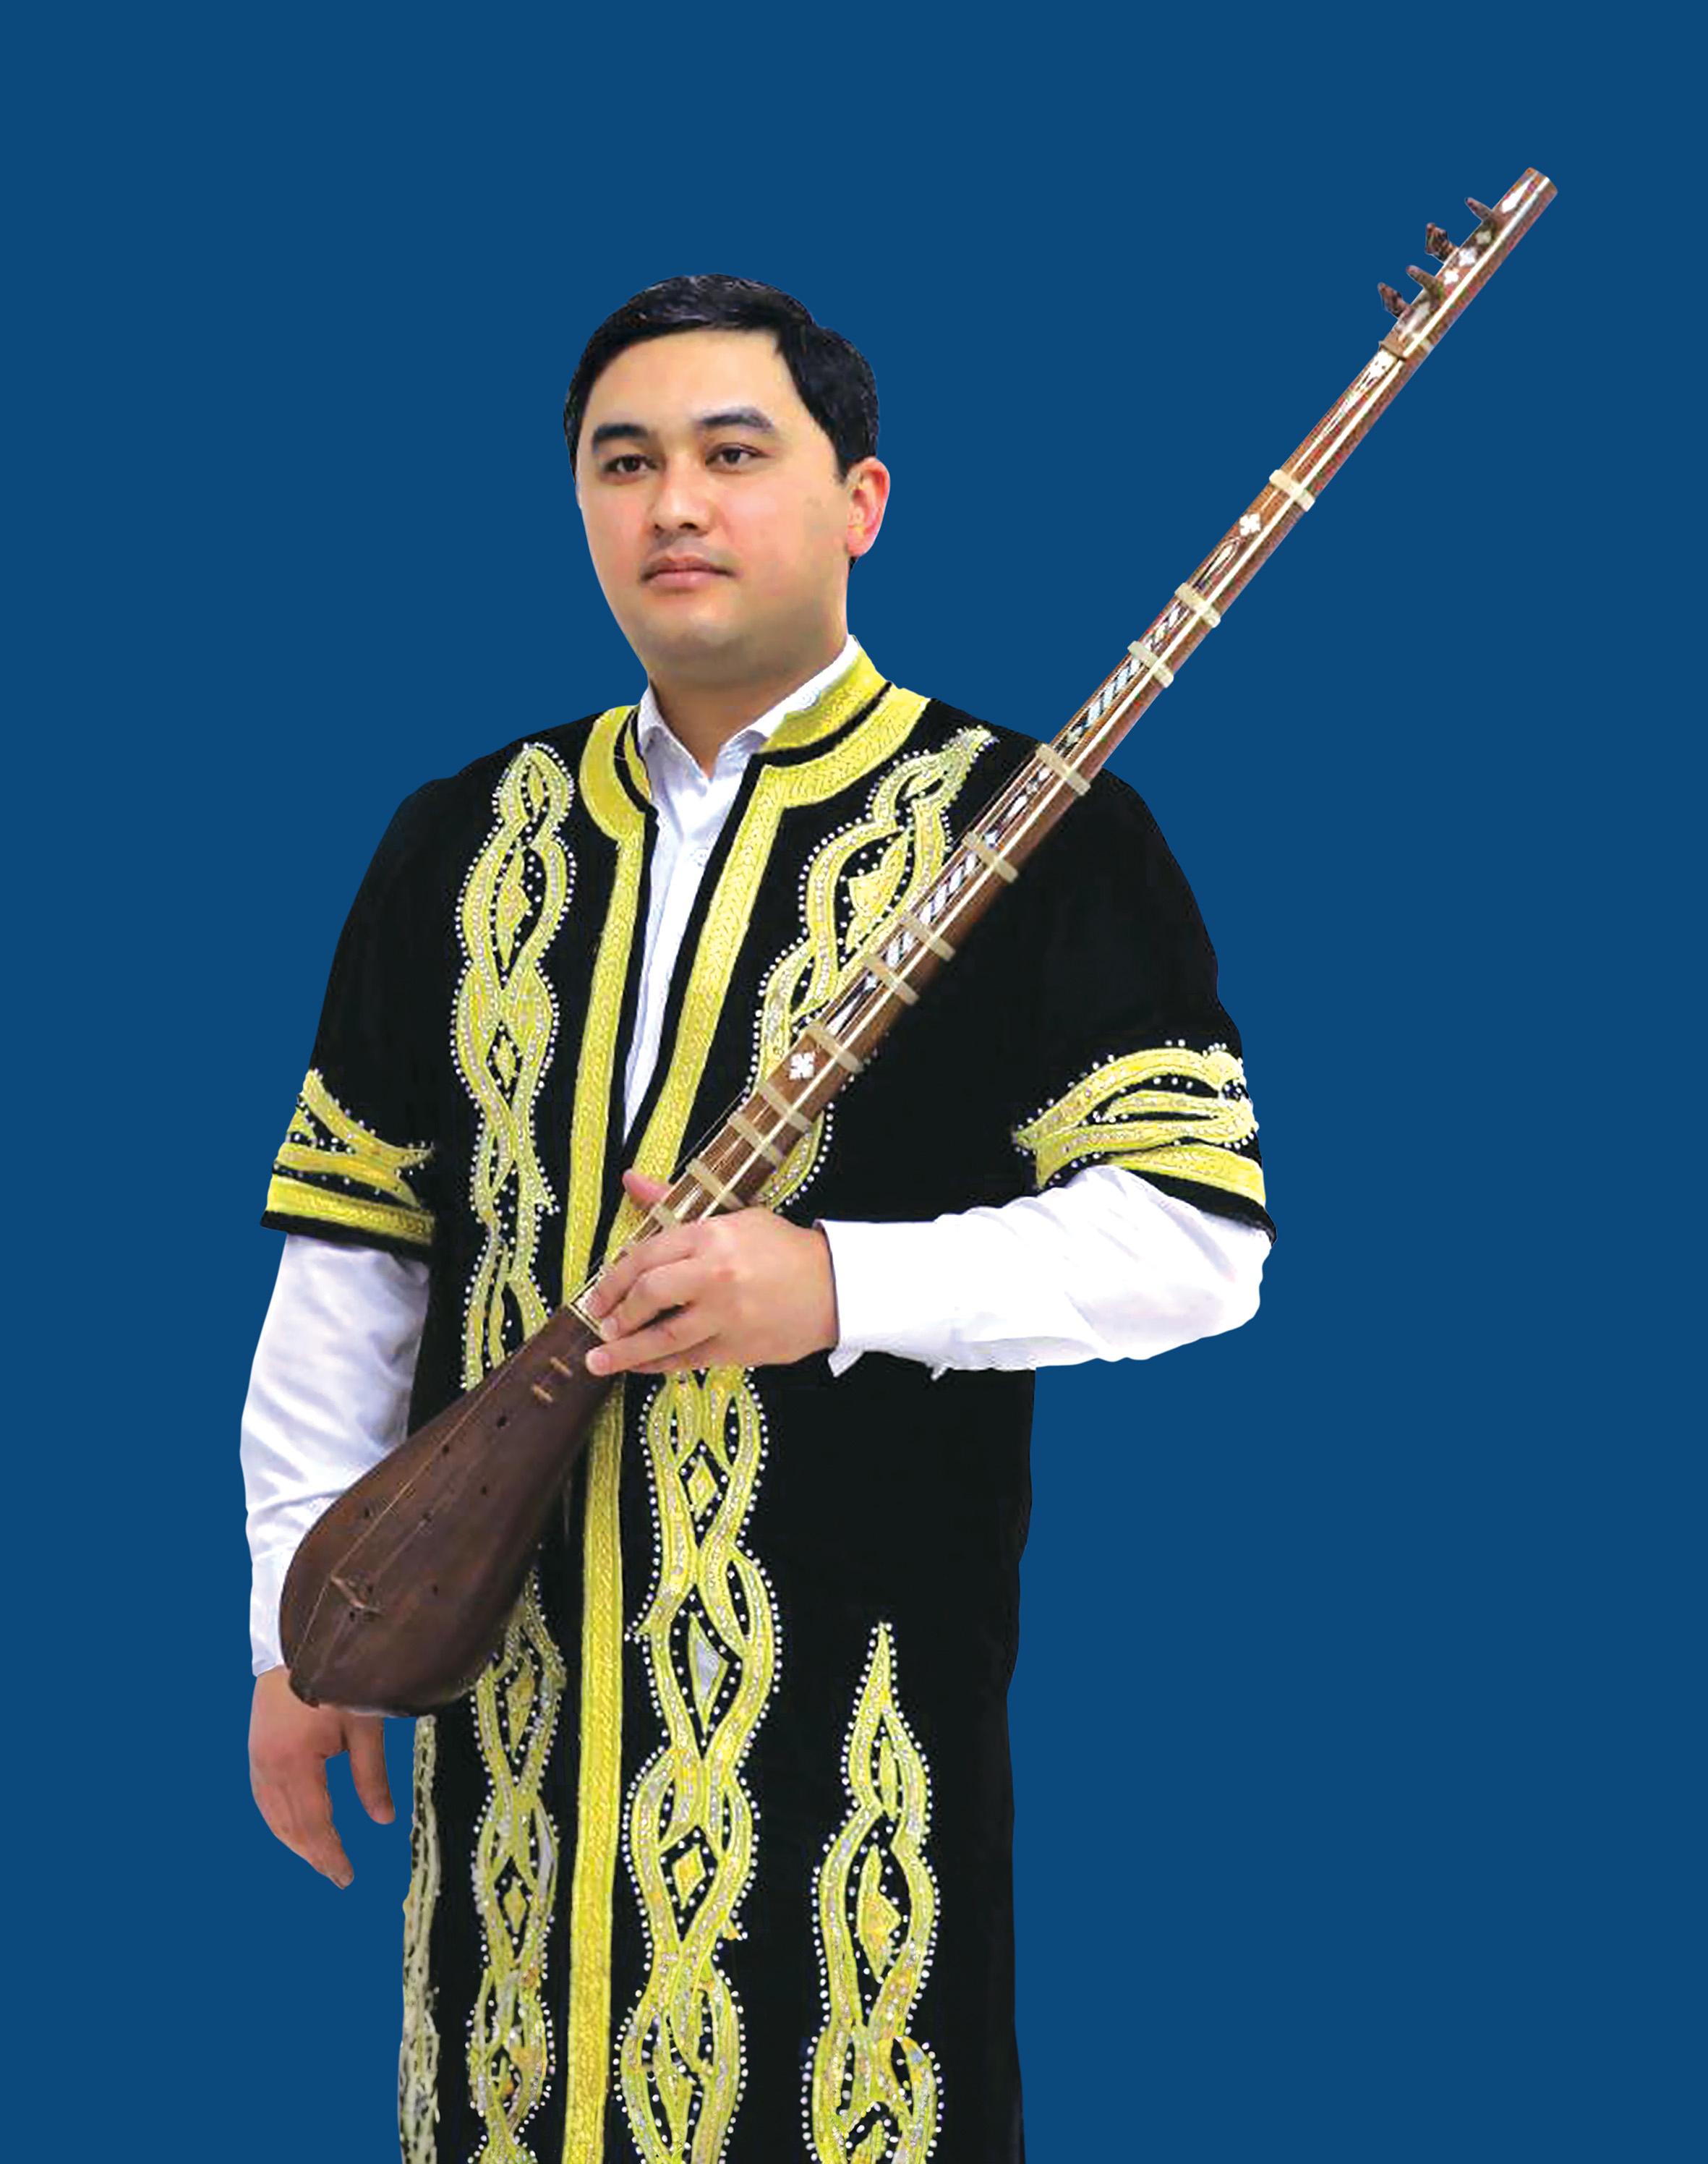 《朱拉耶夫與塔吉克音樂—絲路上的傳統與創新》演奏會將於六月十七日舉行。圖為塔吉克歌手兼音樂家貝赫魯茲‧奈姆佐達。